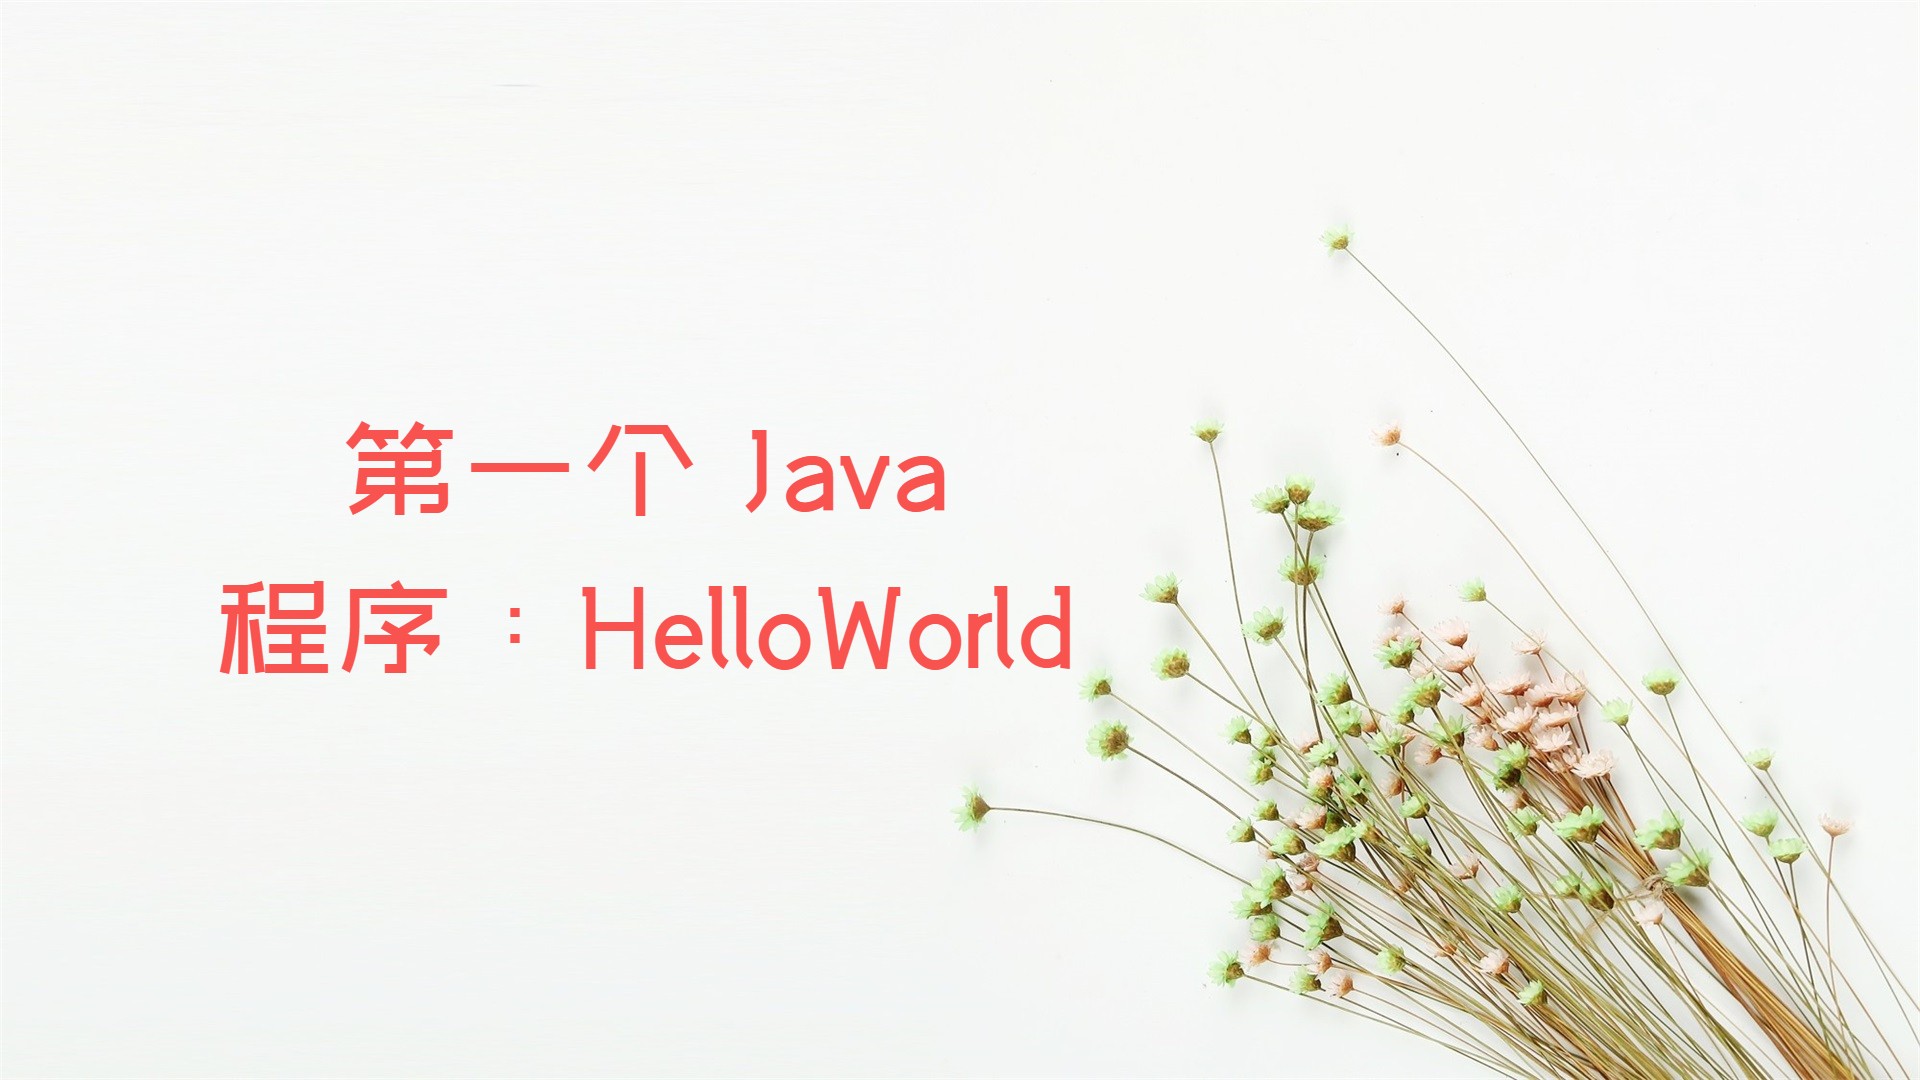 第一个Java程序:HelloWorld